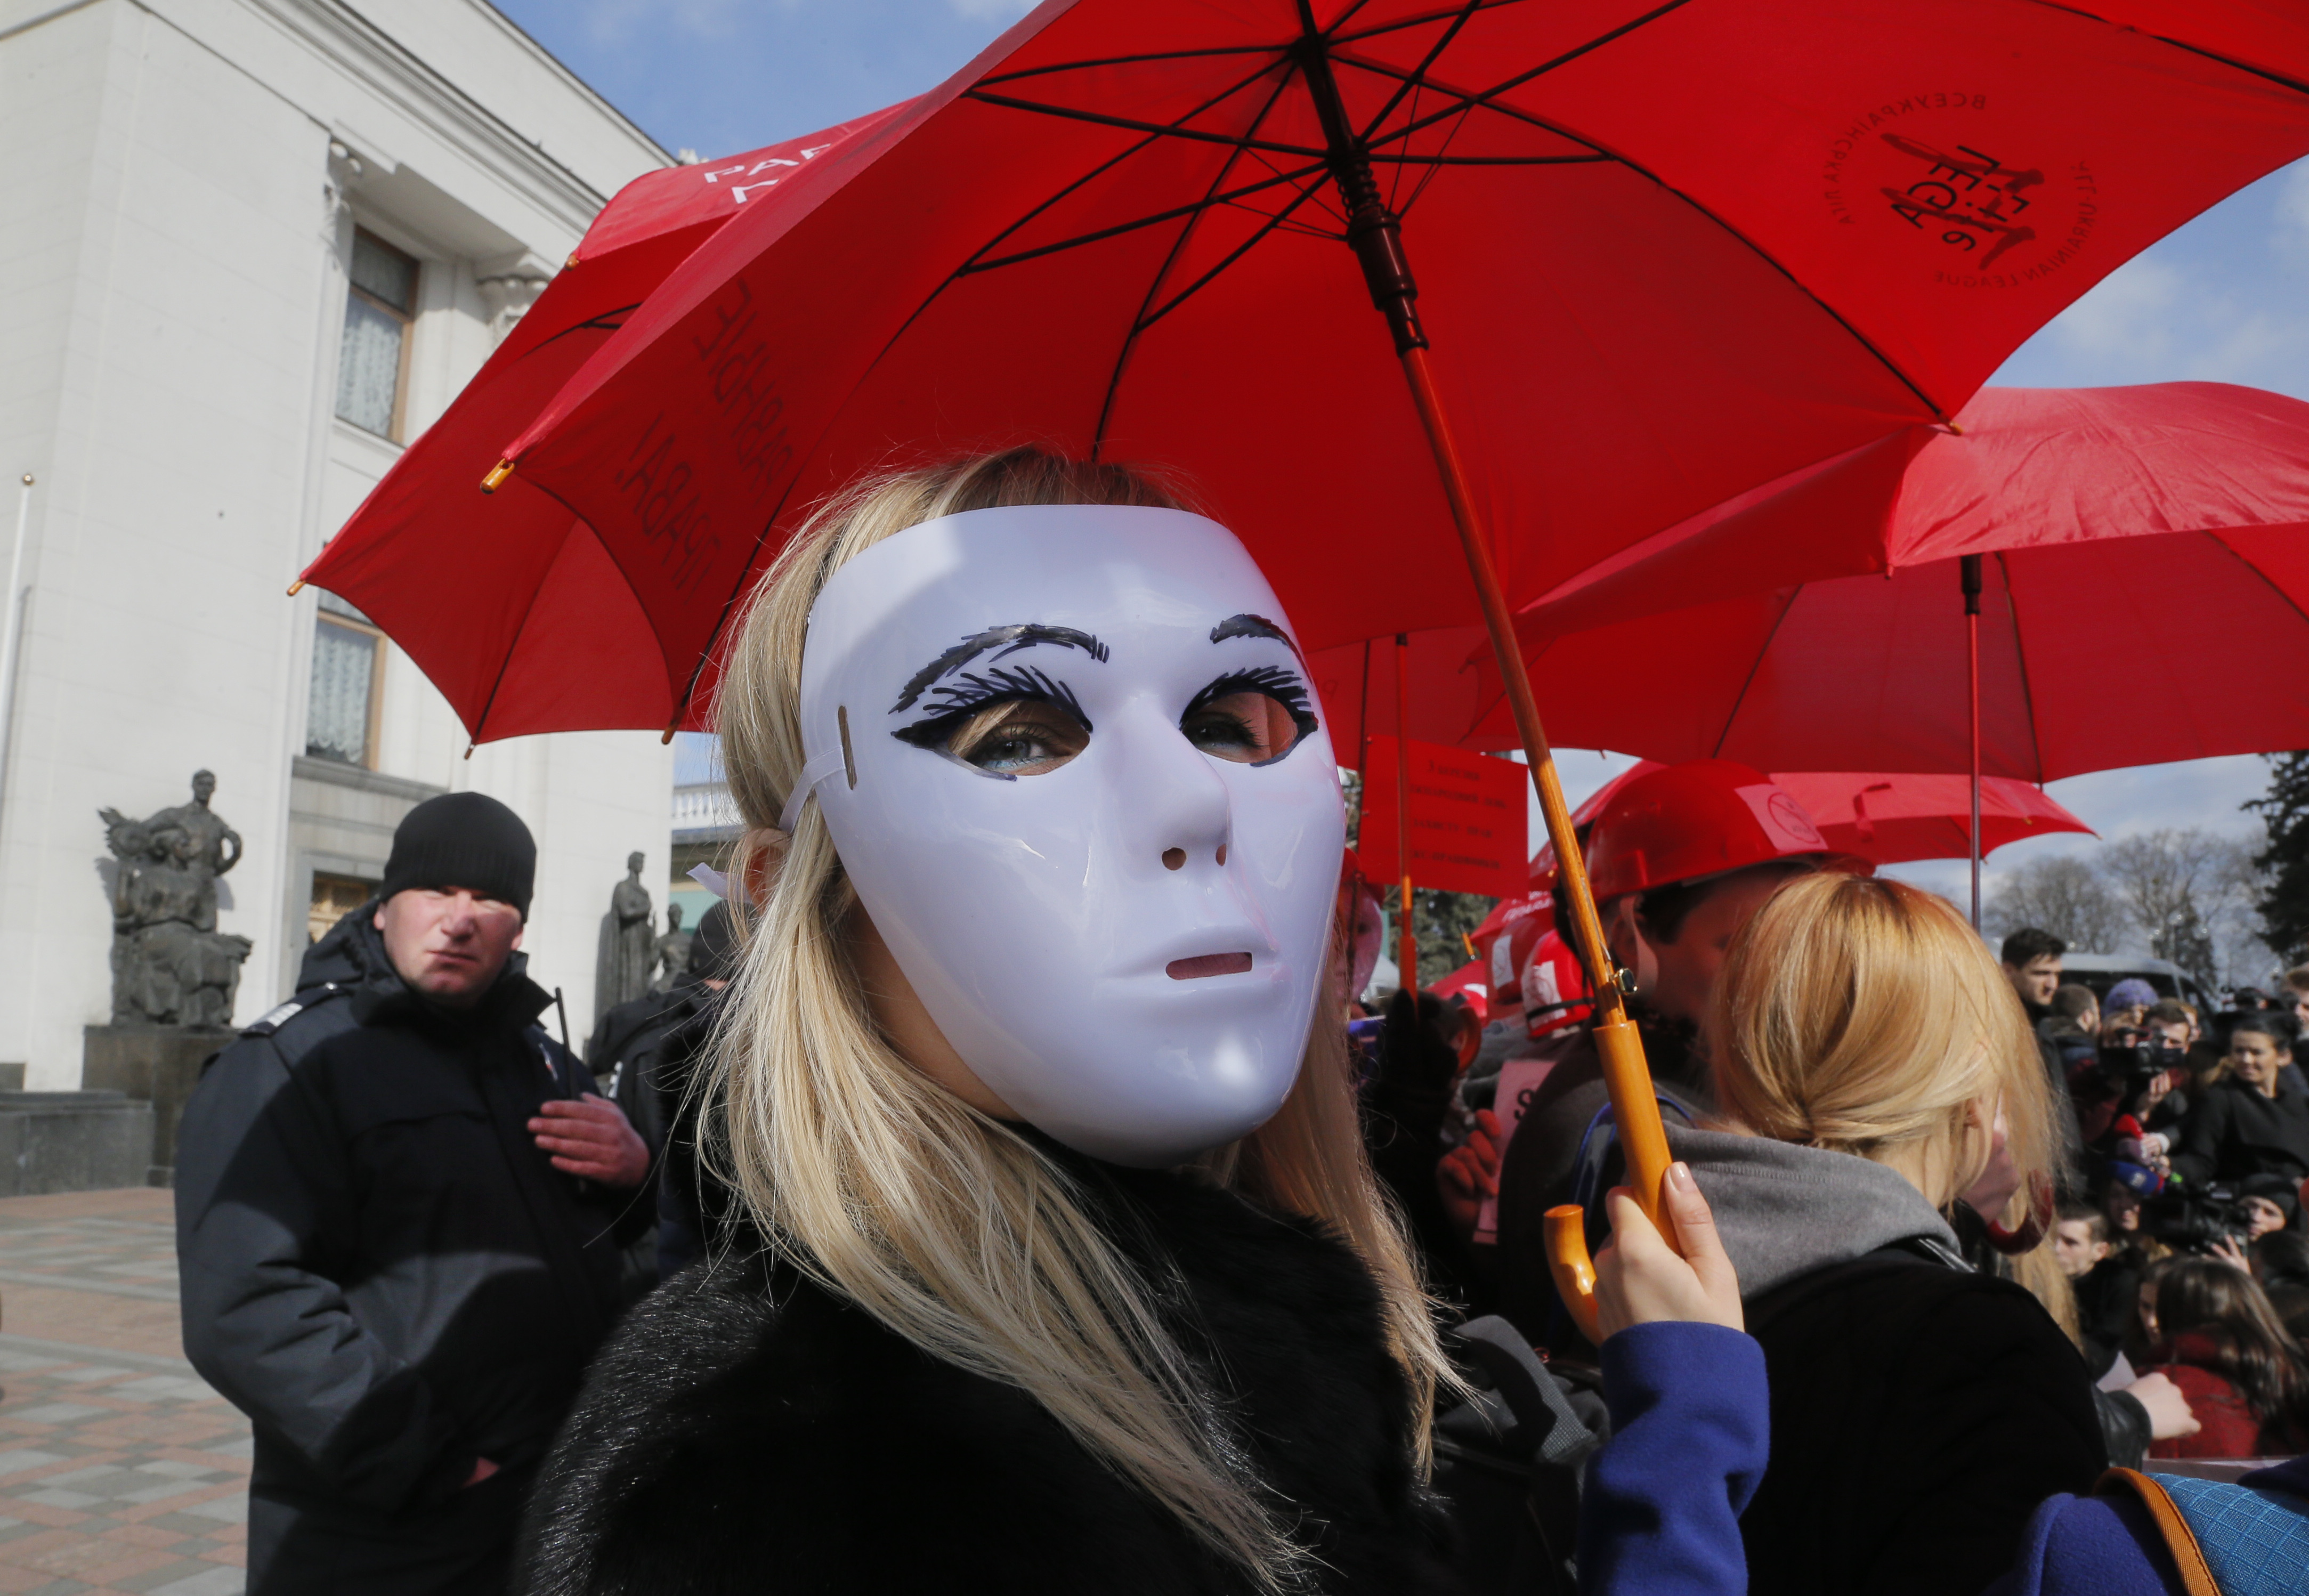 Участничките в протеста в защита на легализирането на проституцията в Украйна носеха бели маски